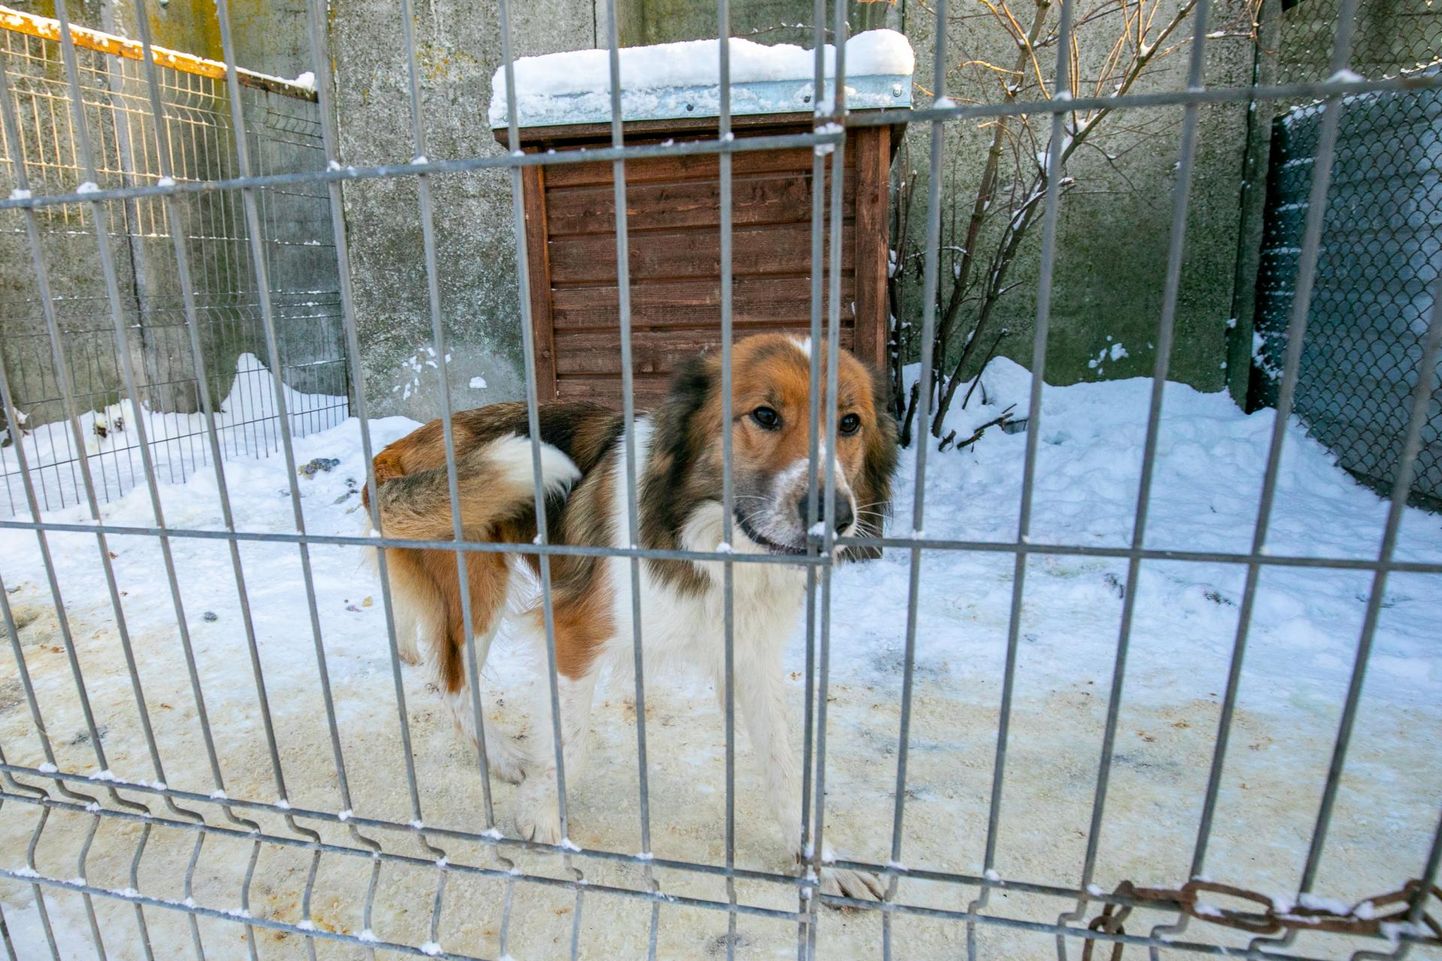 Novembris, kui varjupaikades oli rõhk sellele, et kodu leiaksid koerad, kes on vanemad kui viis aastat, leidis Virumaal kodu üks loom. Foto on illustratiivne.